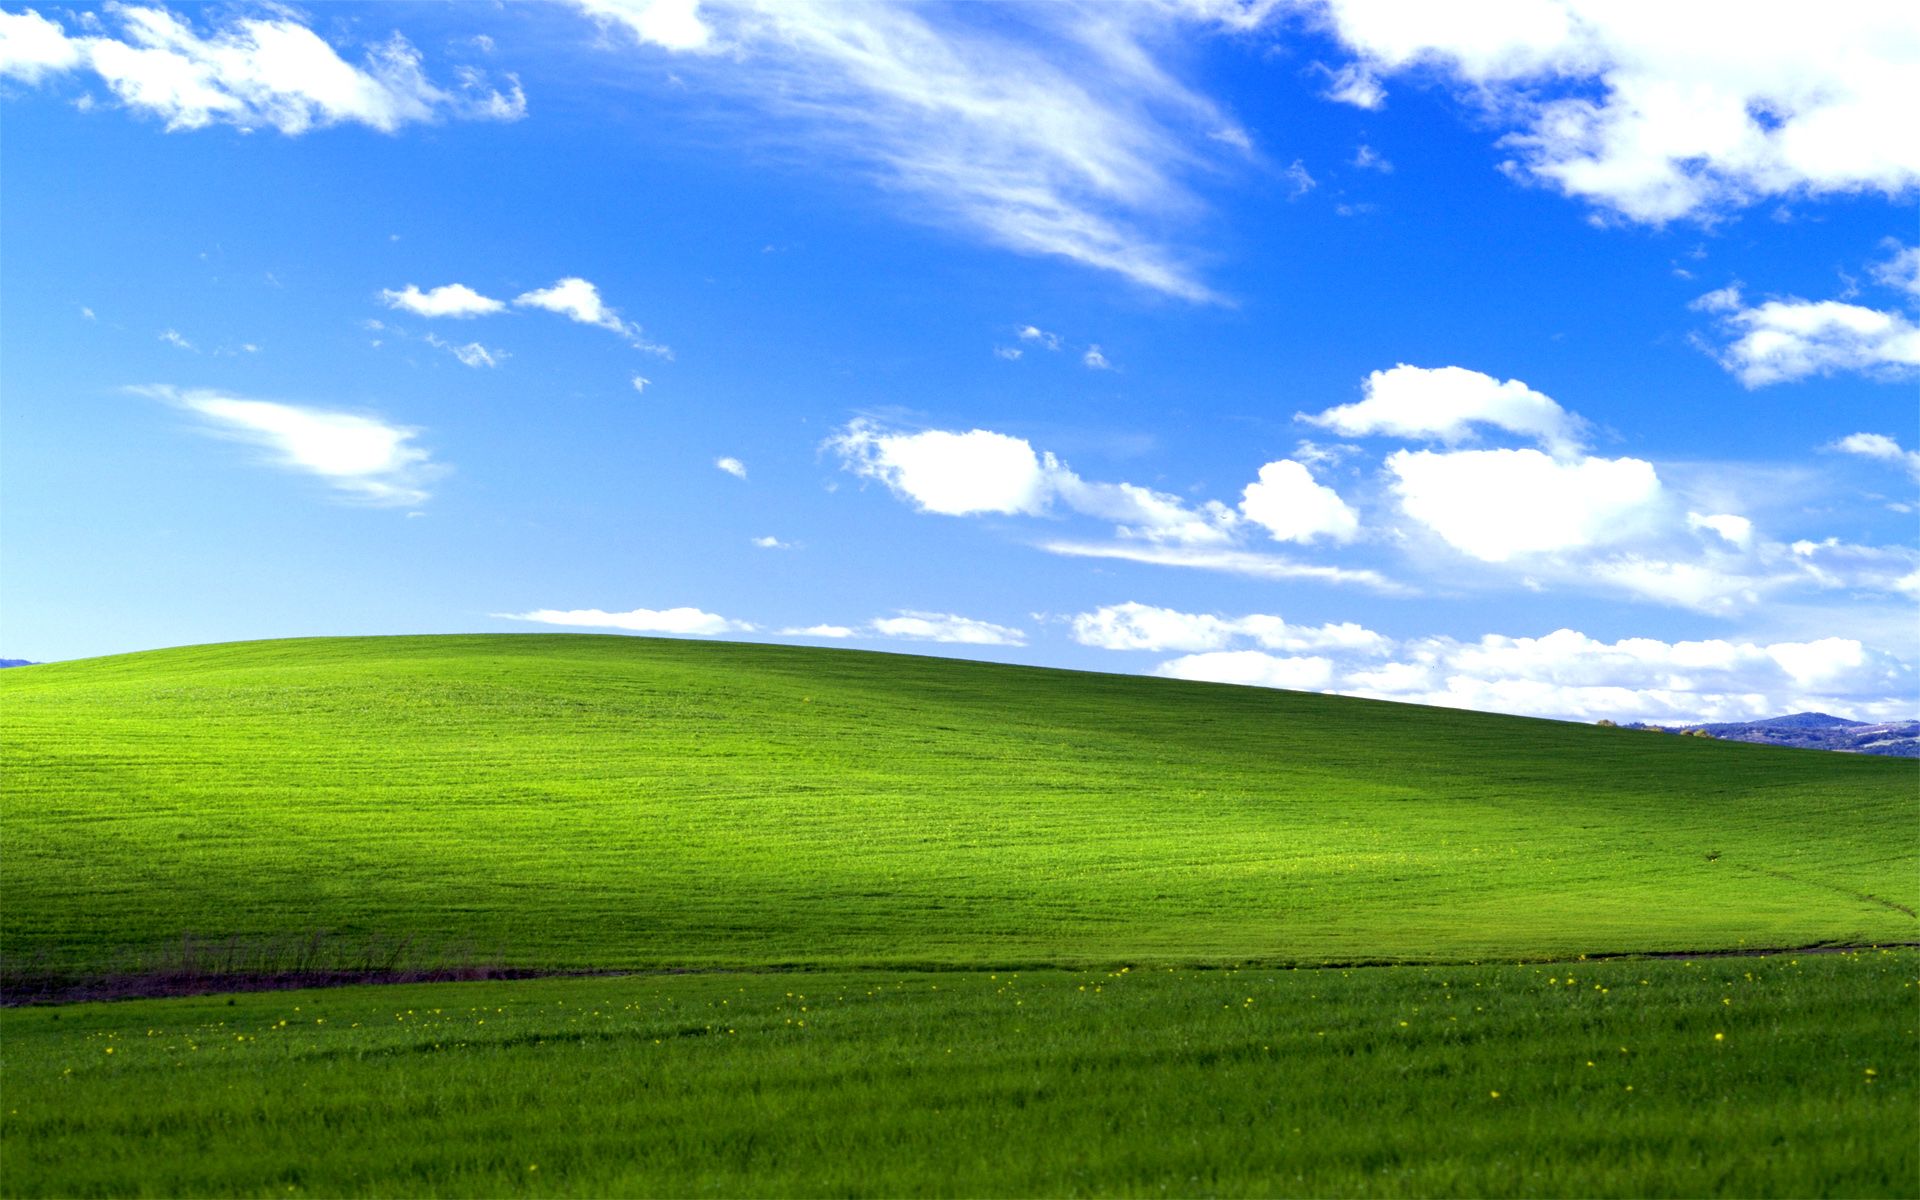 Bộ sưu tập hình nền Windows XP sẽ mang đến cho bạn những nguồn cảm hứng dễ chịu, giúp bạn tăng cường tâm trạng làm việc và giải trí.